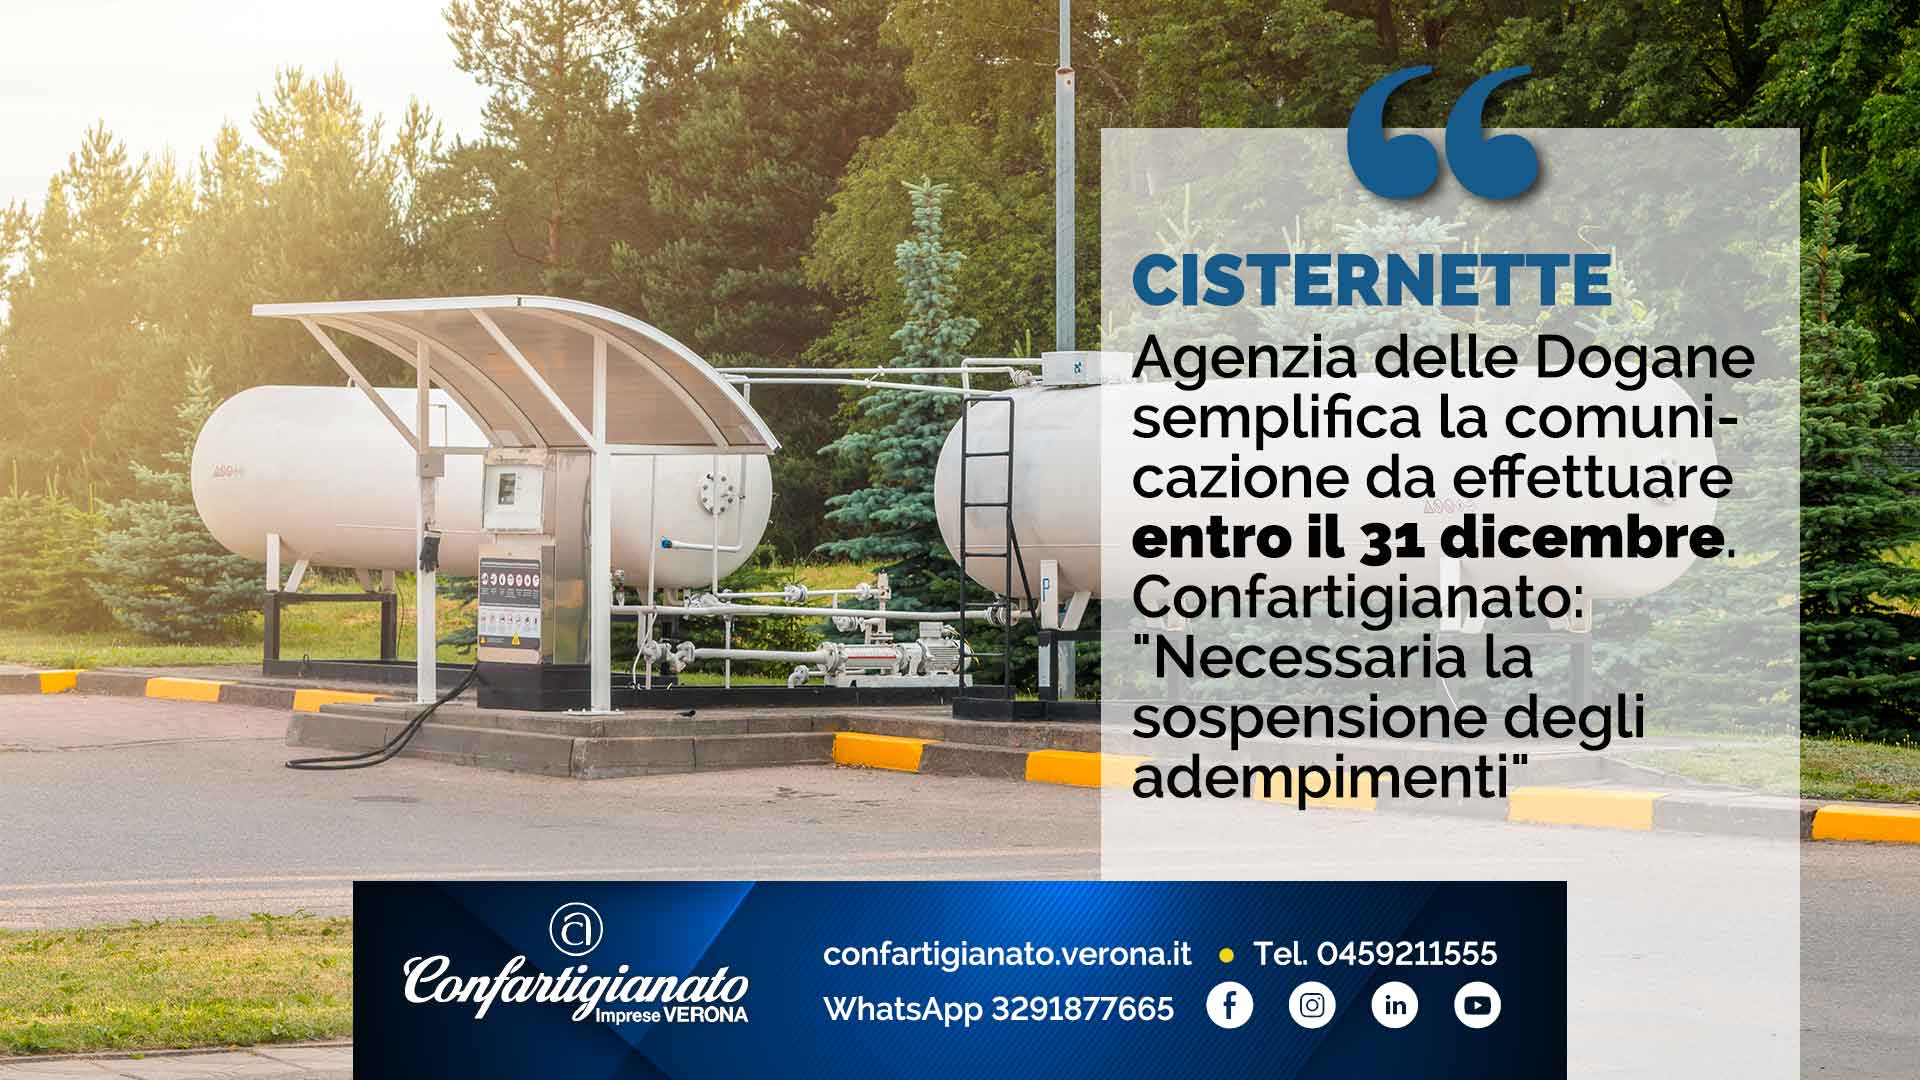 CISTERNETTE - Agenzia Dogane semplifica la comunicazione da effettuare entro il 31 dicembre. Confartigianato: "Necessaria sospensione adempimenti"